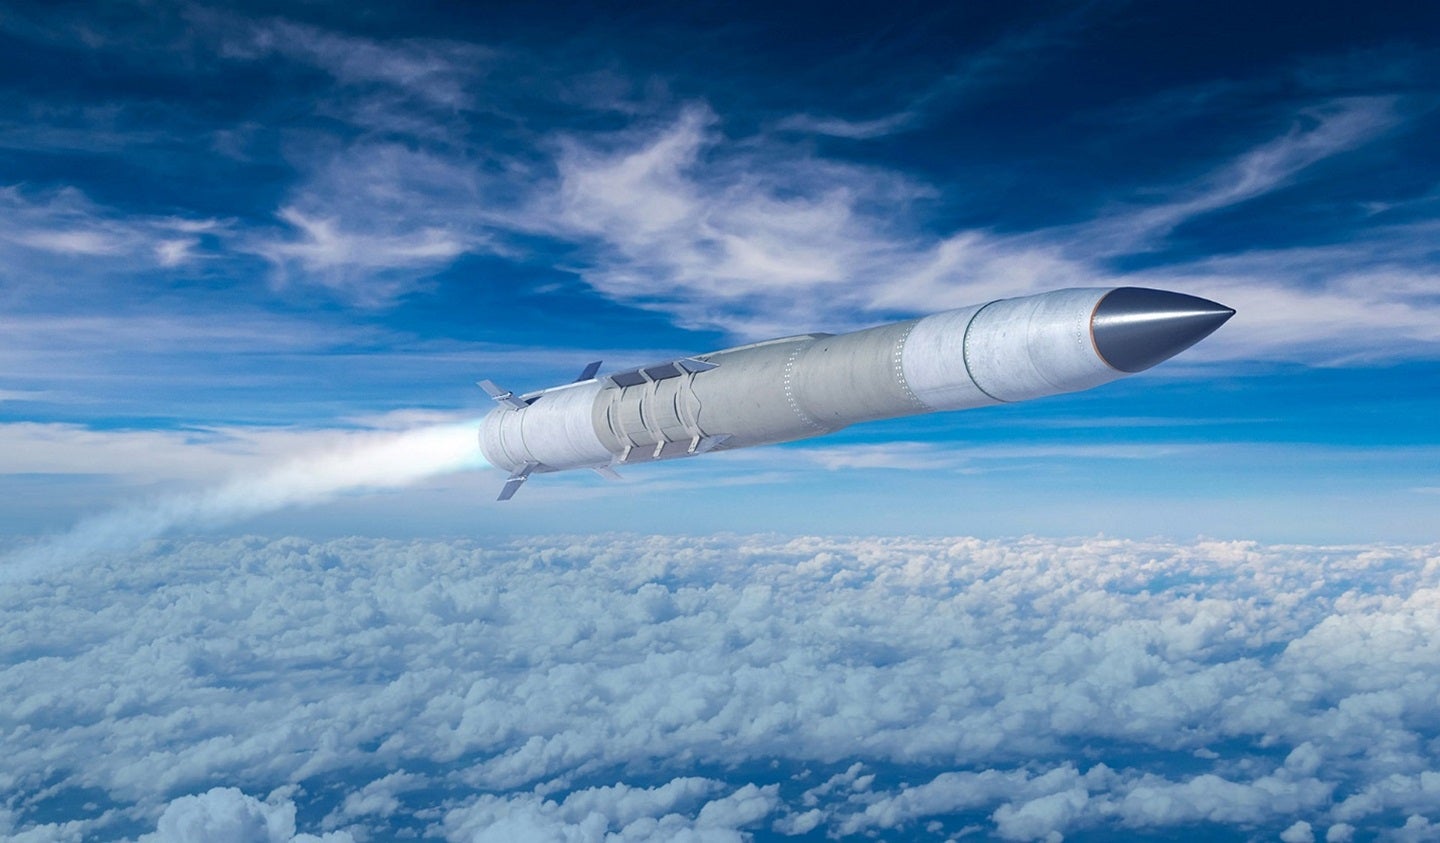 El ejército estadounidense dispara por primera vez un misil PAC-3 desde el lanzador Aegis